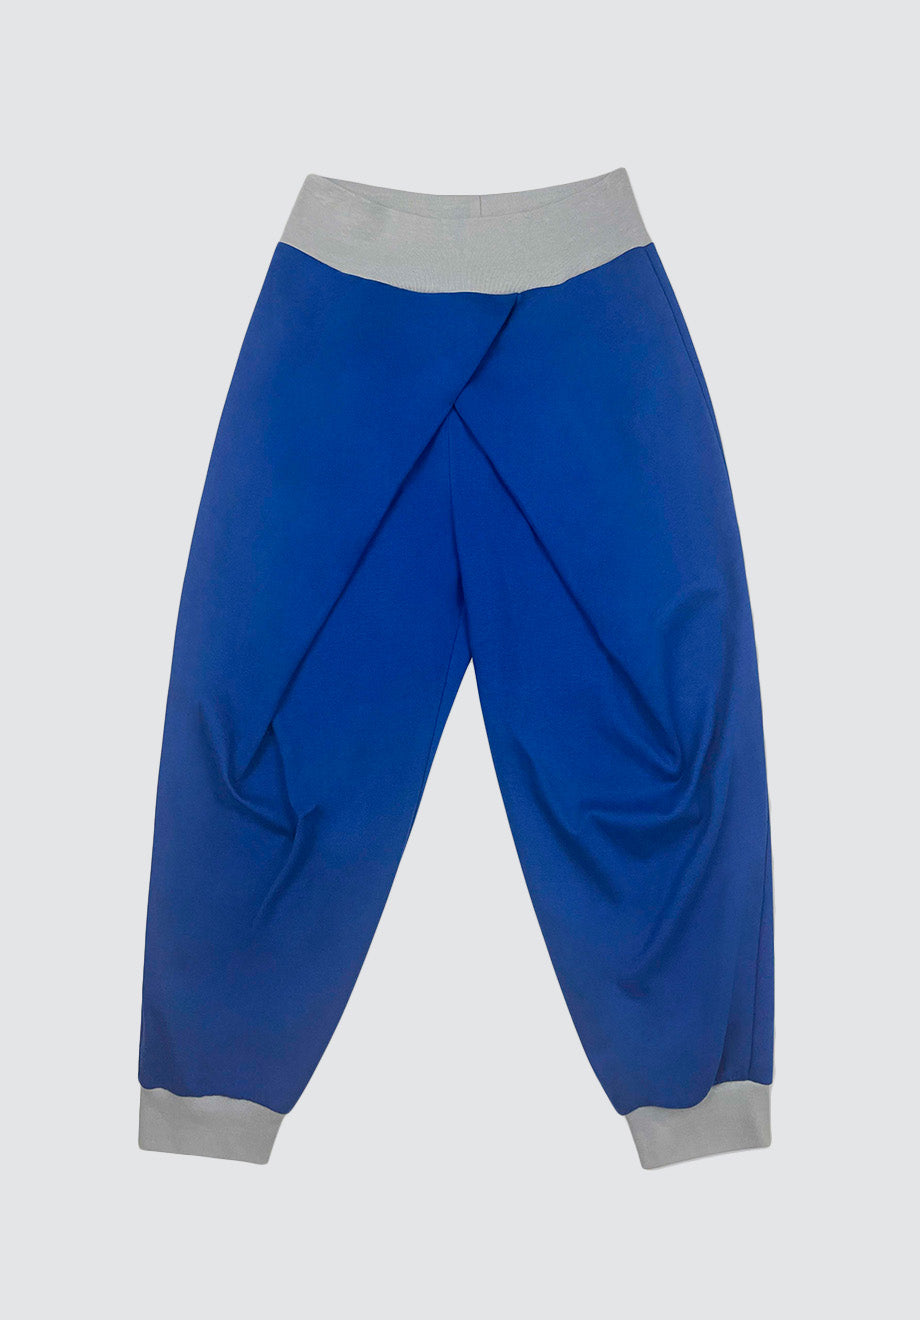 Shanti Yoga Trousers | Blue Lapis